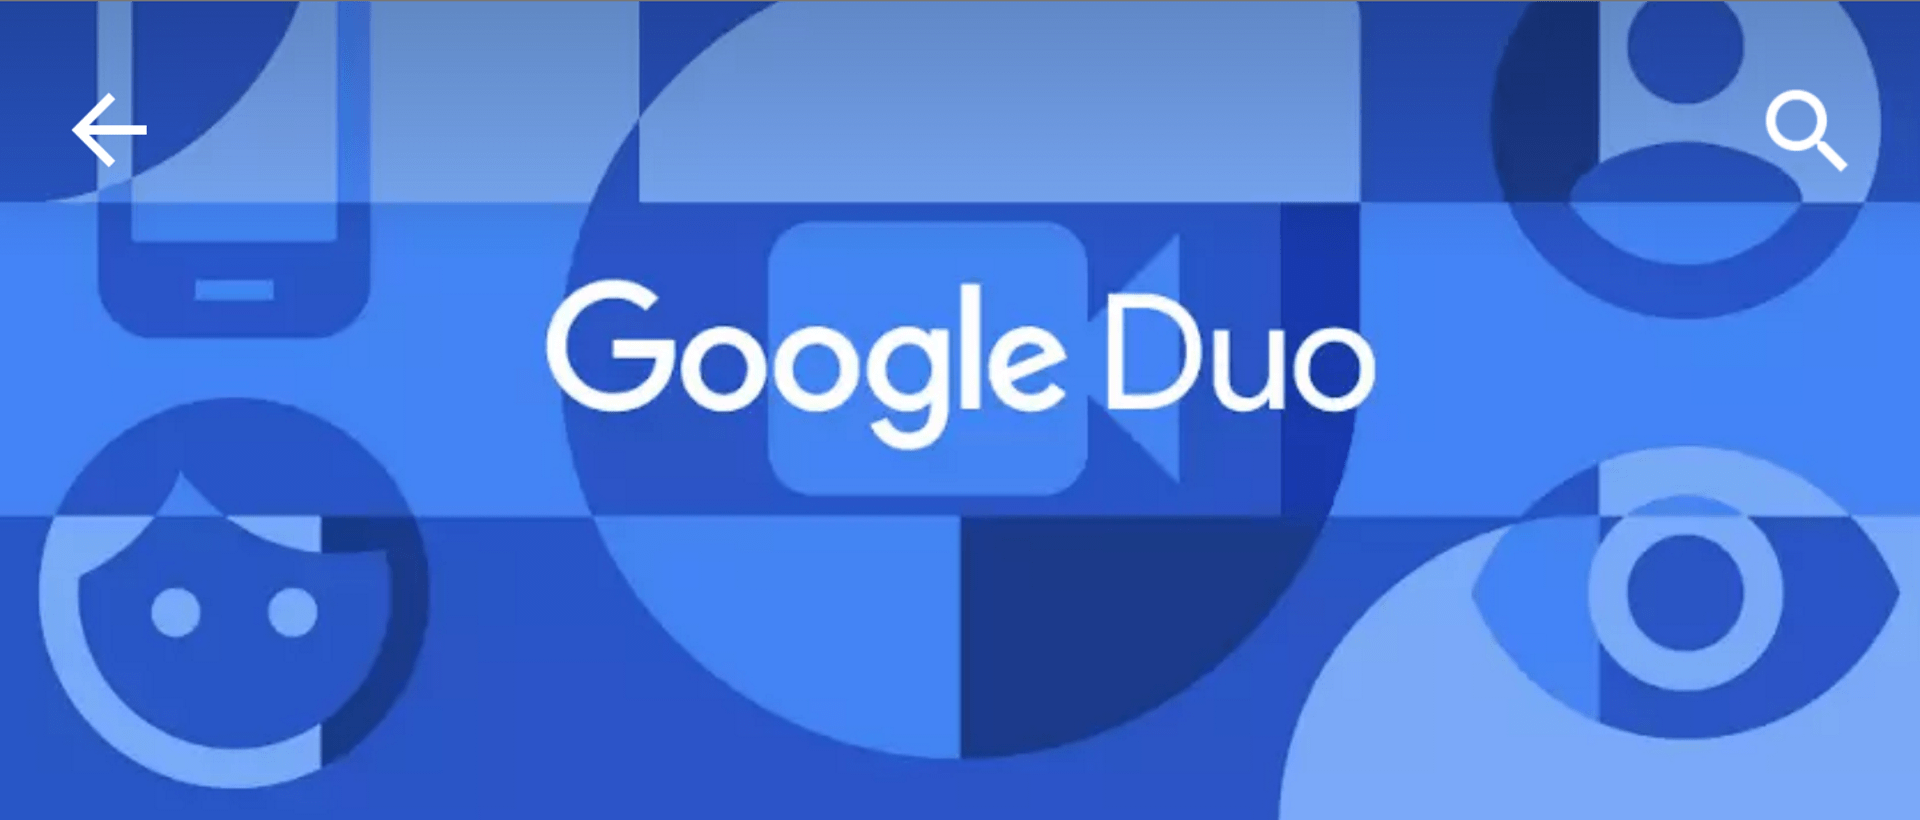 تطبيق Duo يدعم الآن محادثات فيديو تضم أكثر من 32 شخص على نسخة الويب 